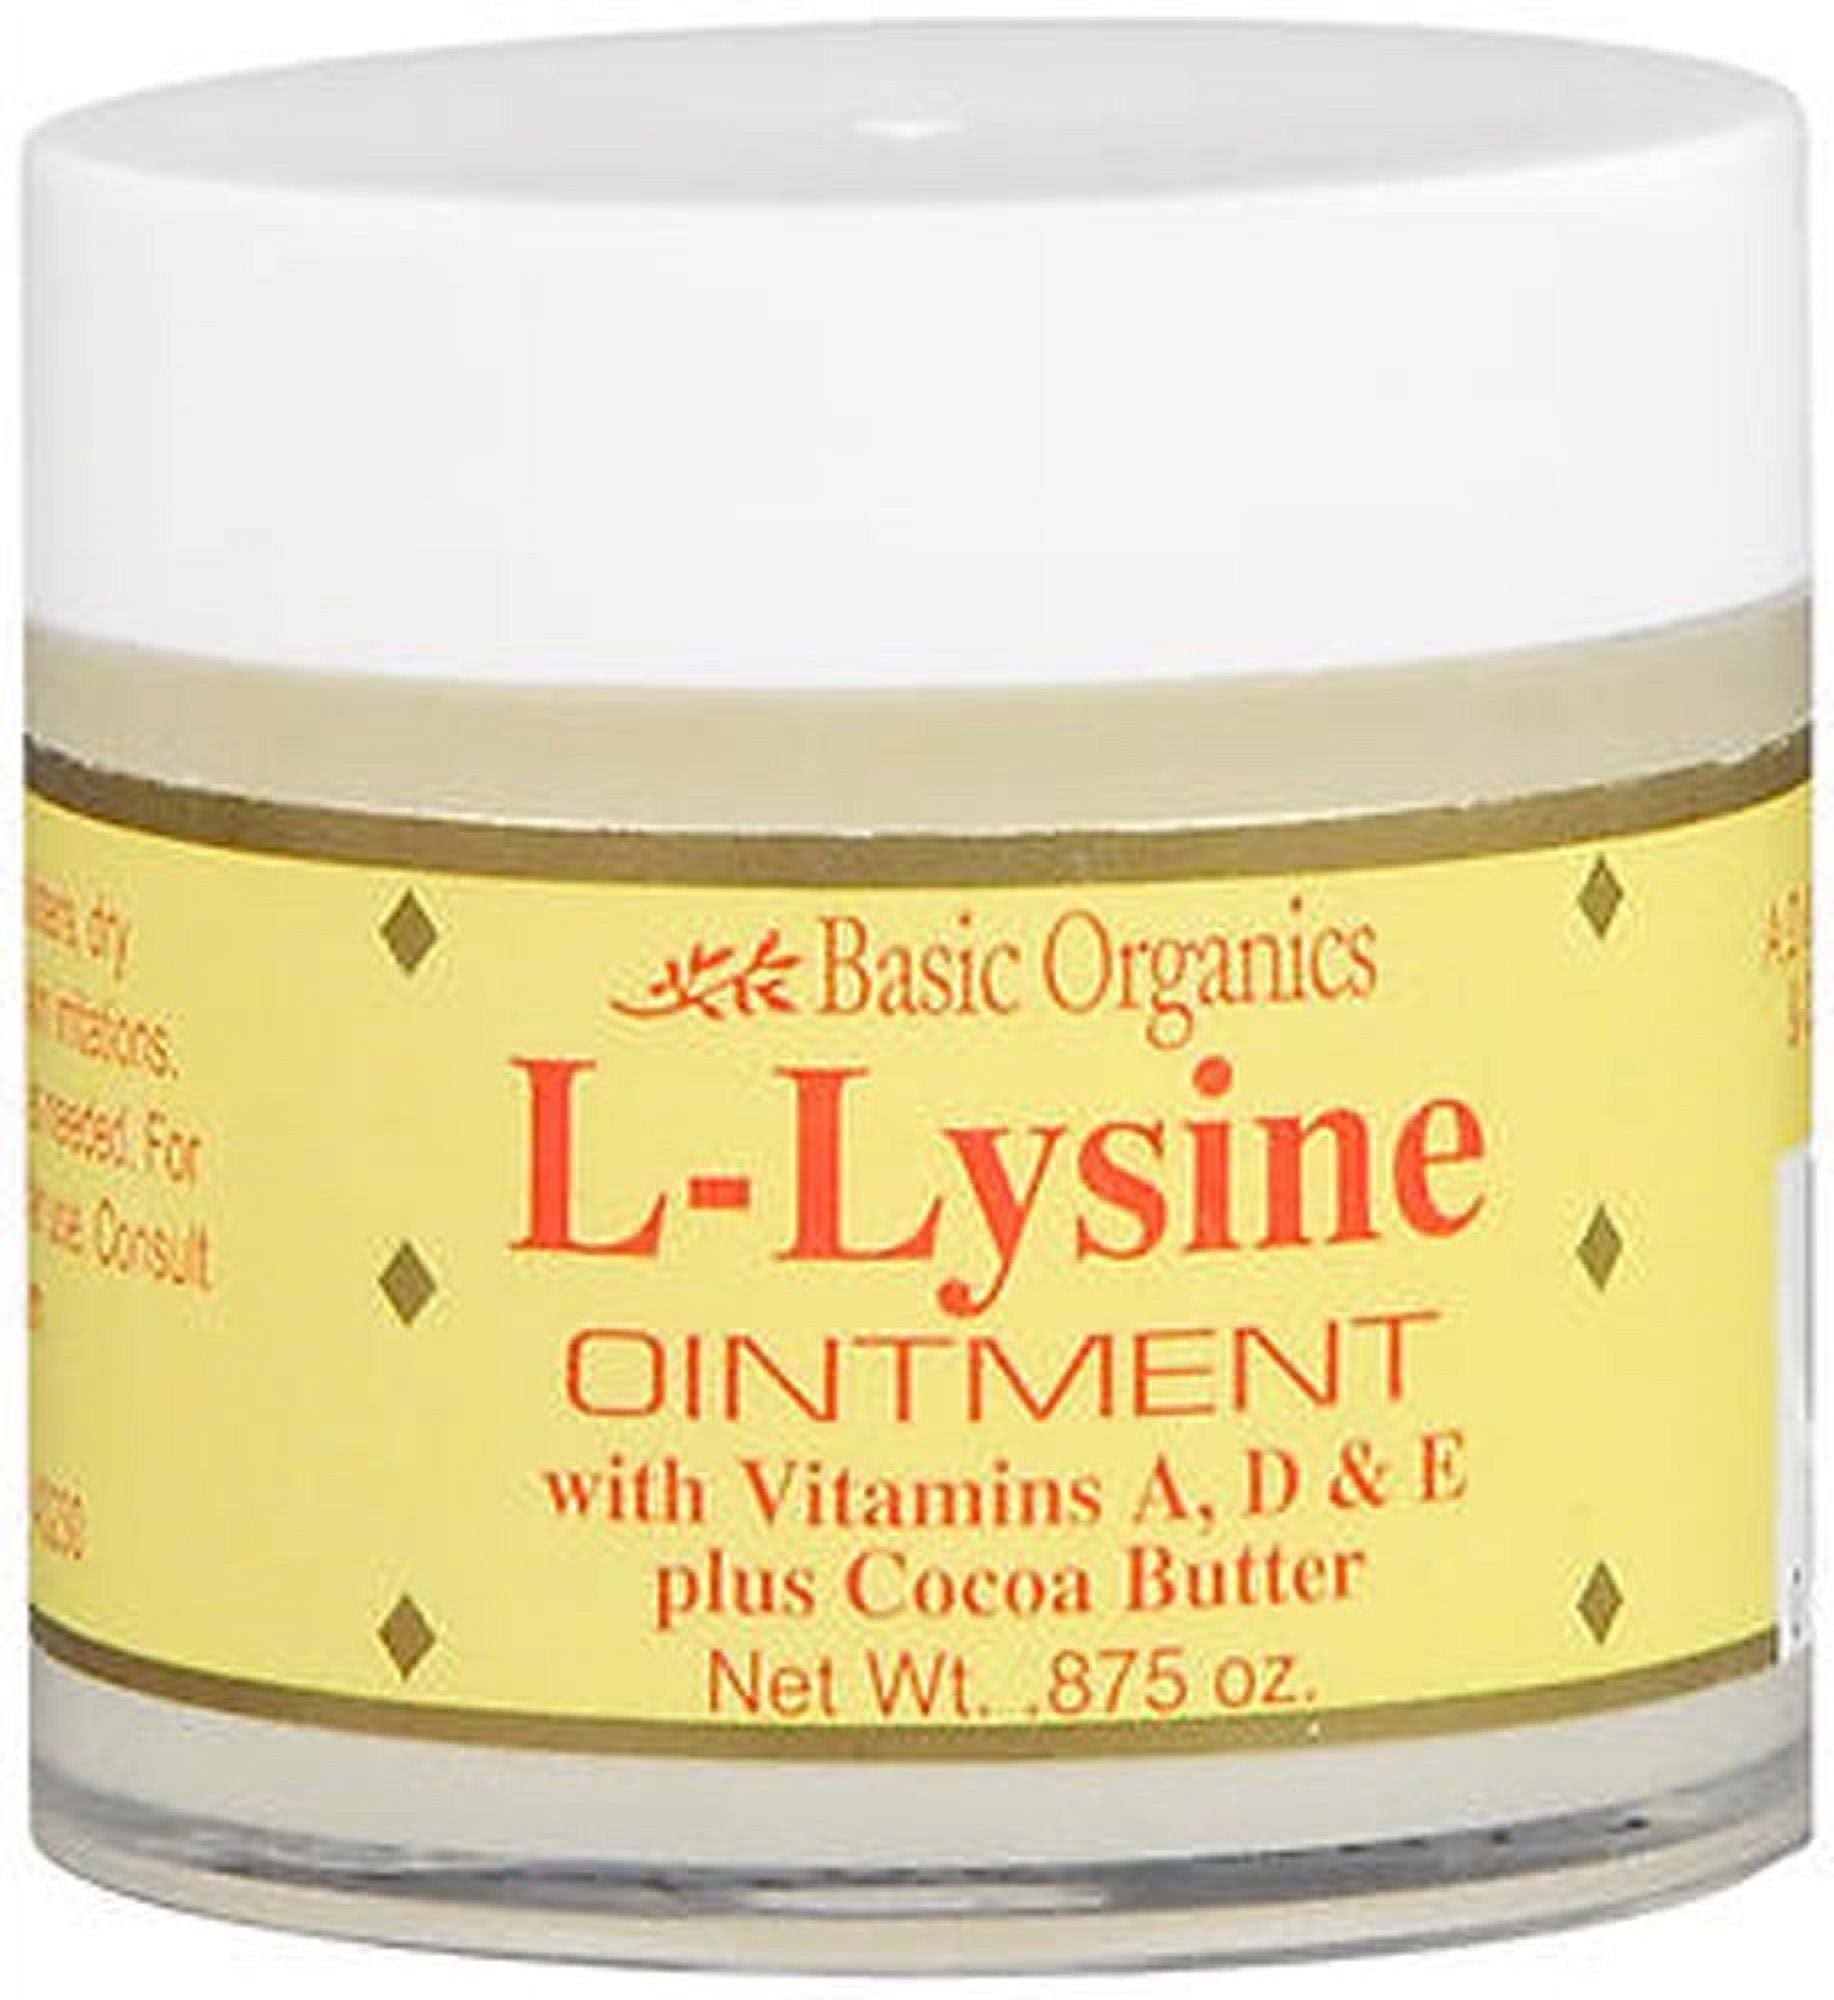 L-Lysine Ointment